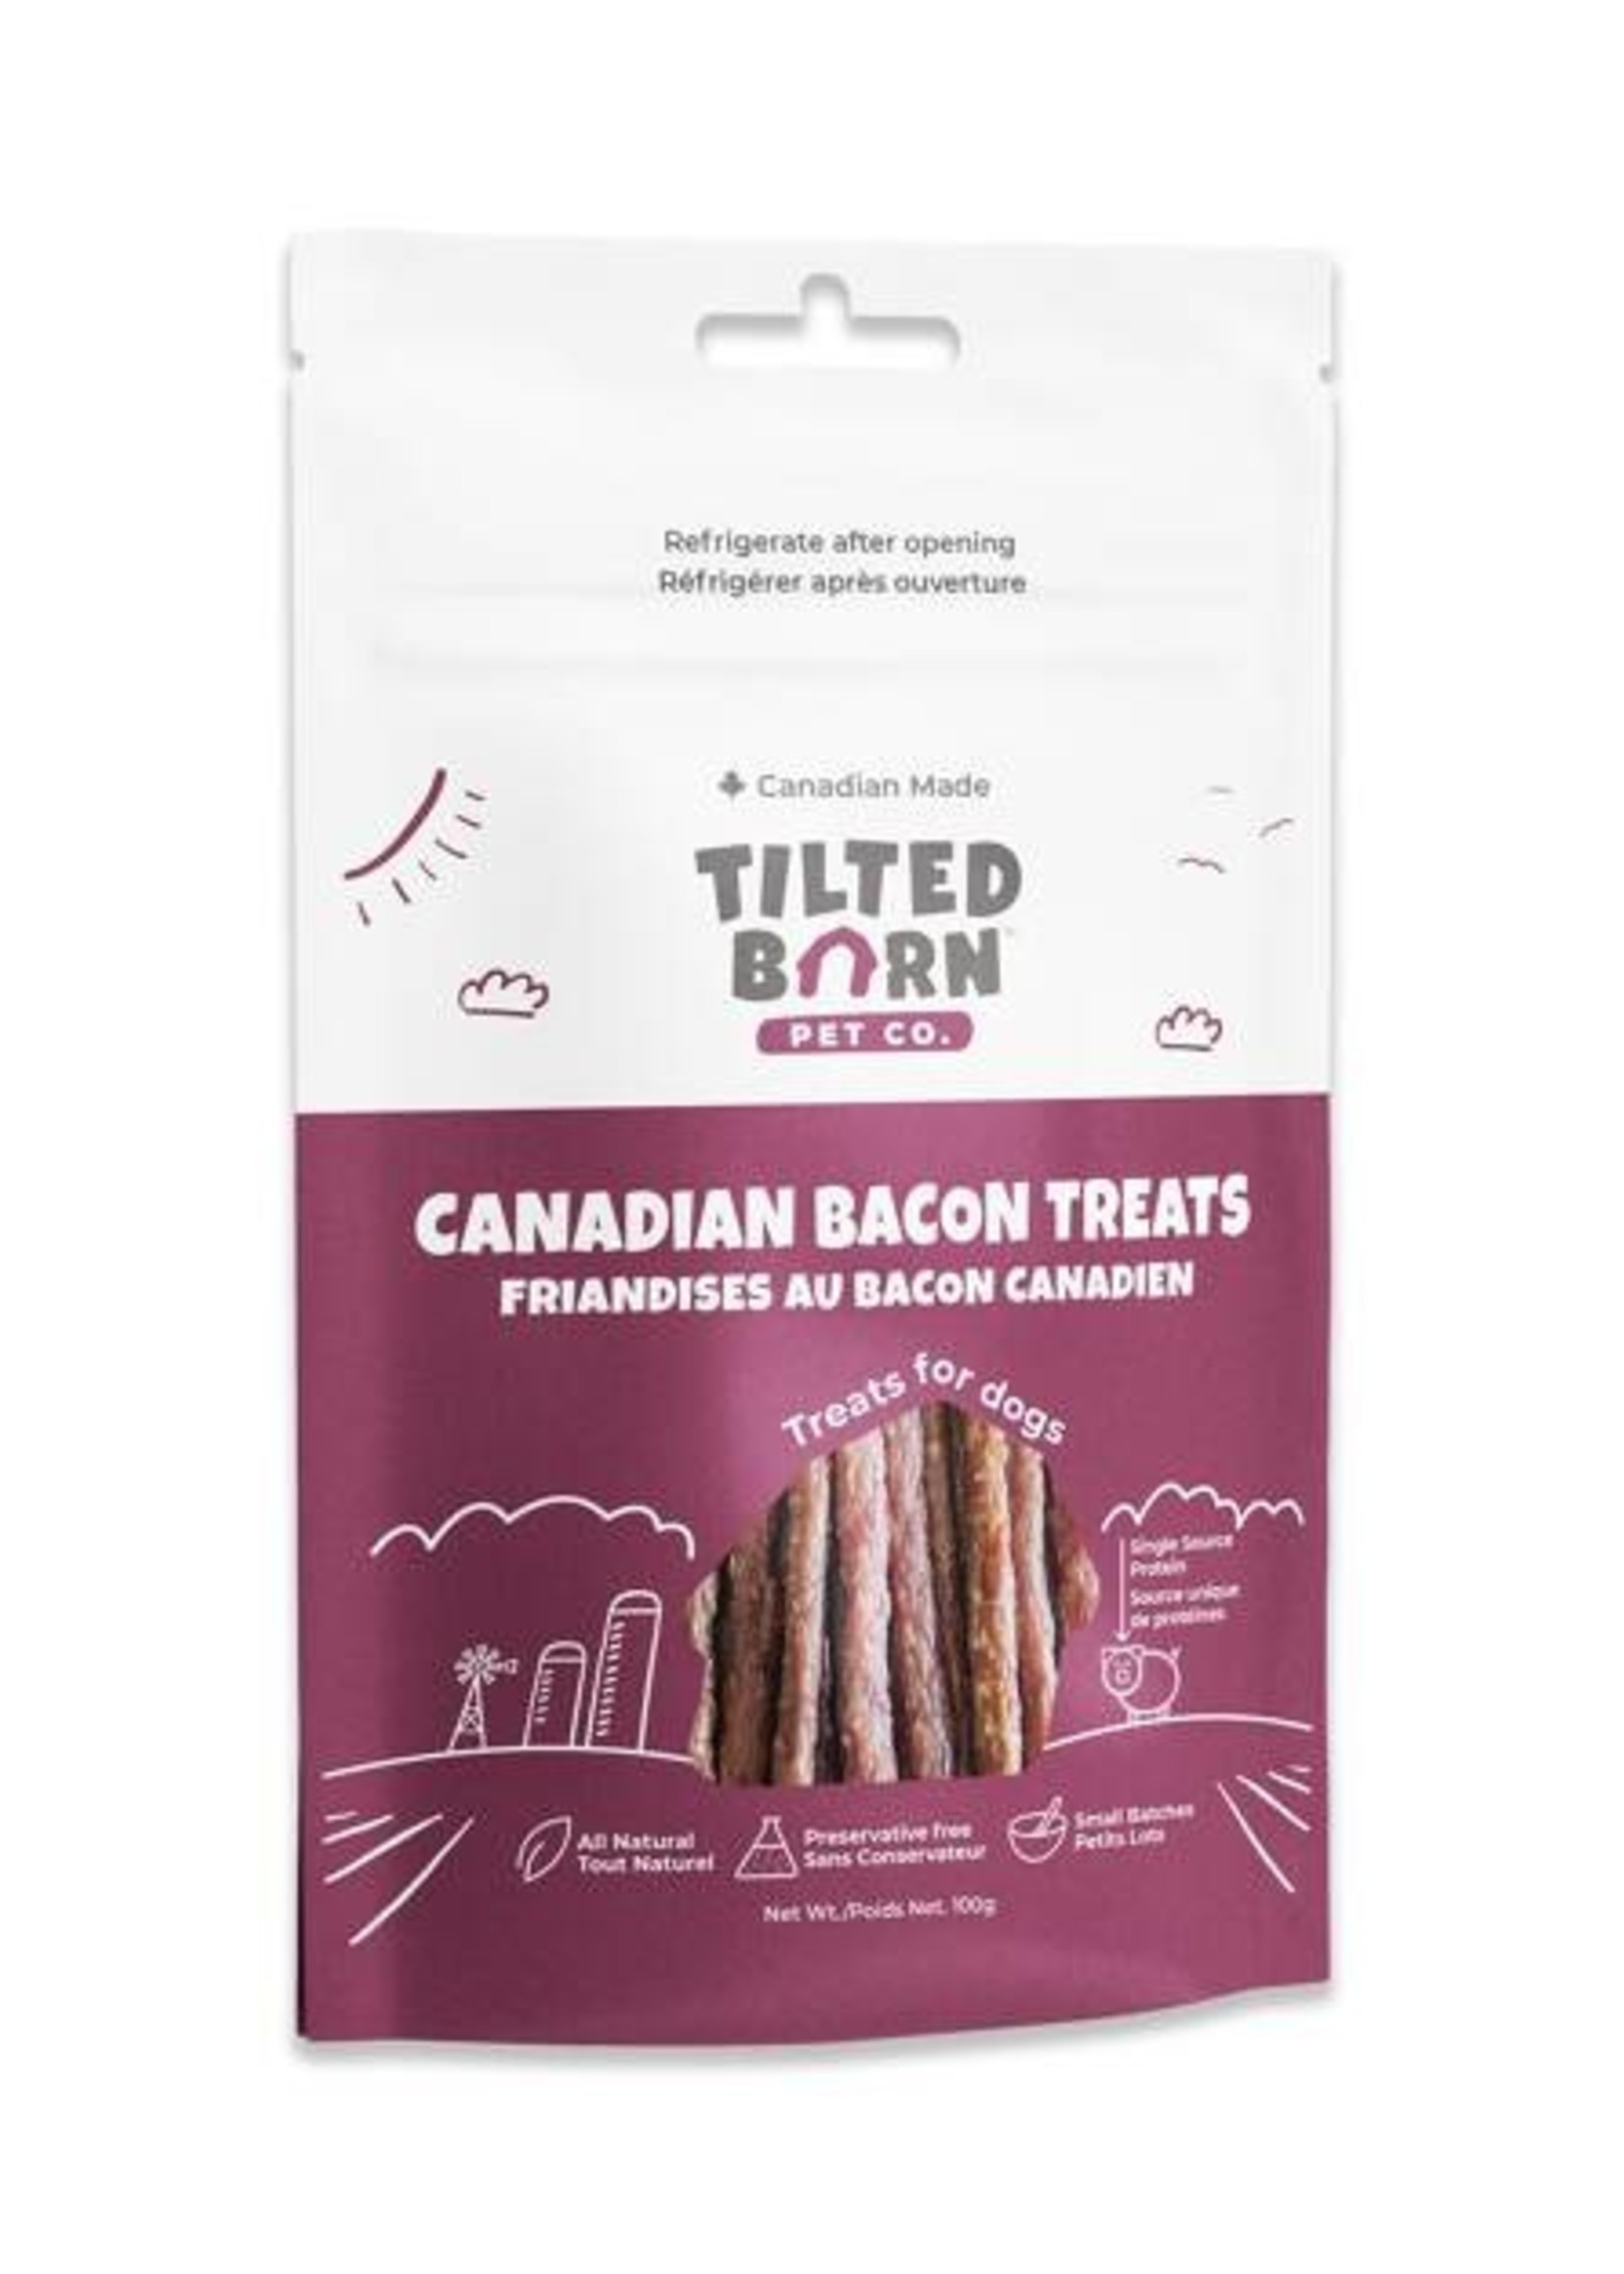 Tilted Barn Pet Co. Farm Fresh Canadian Bacon Treats 100g